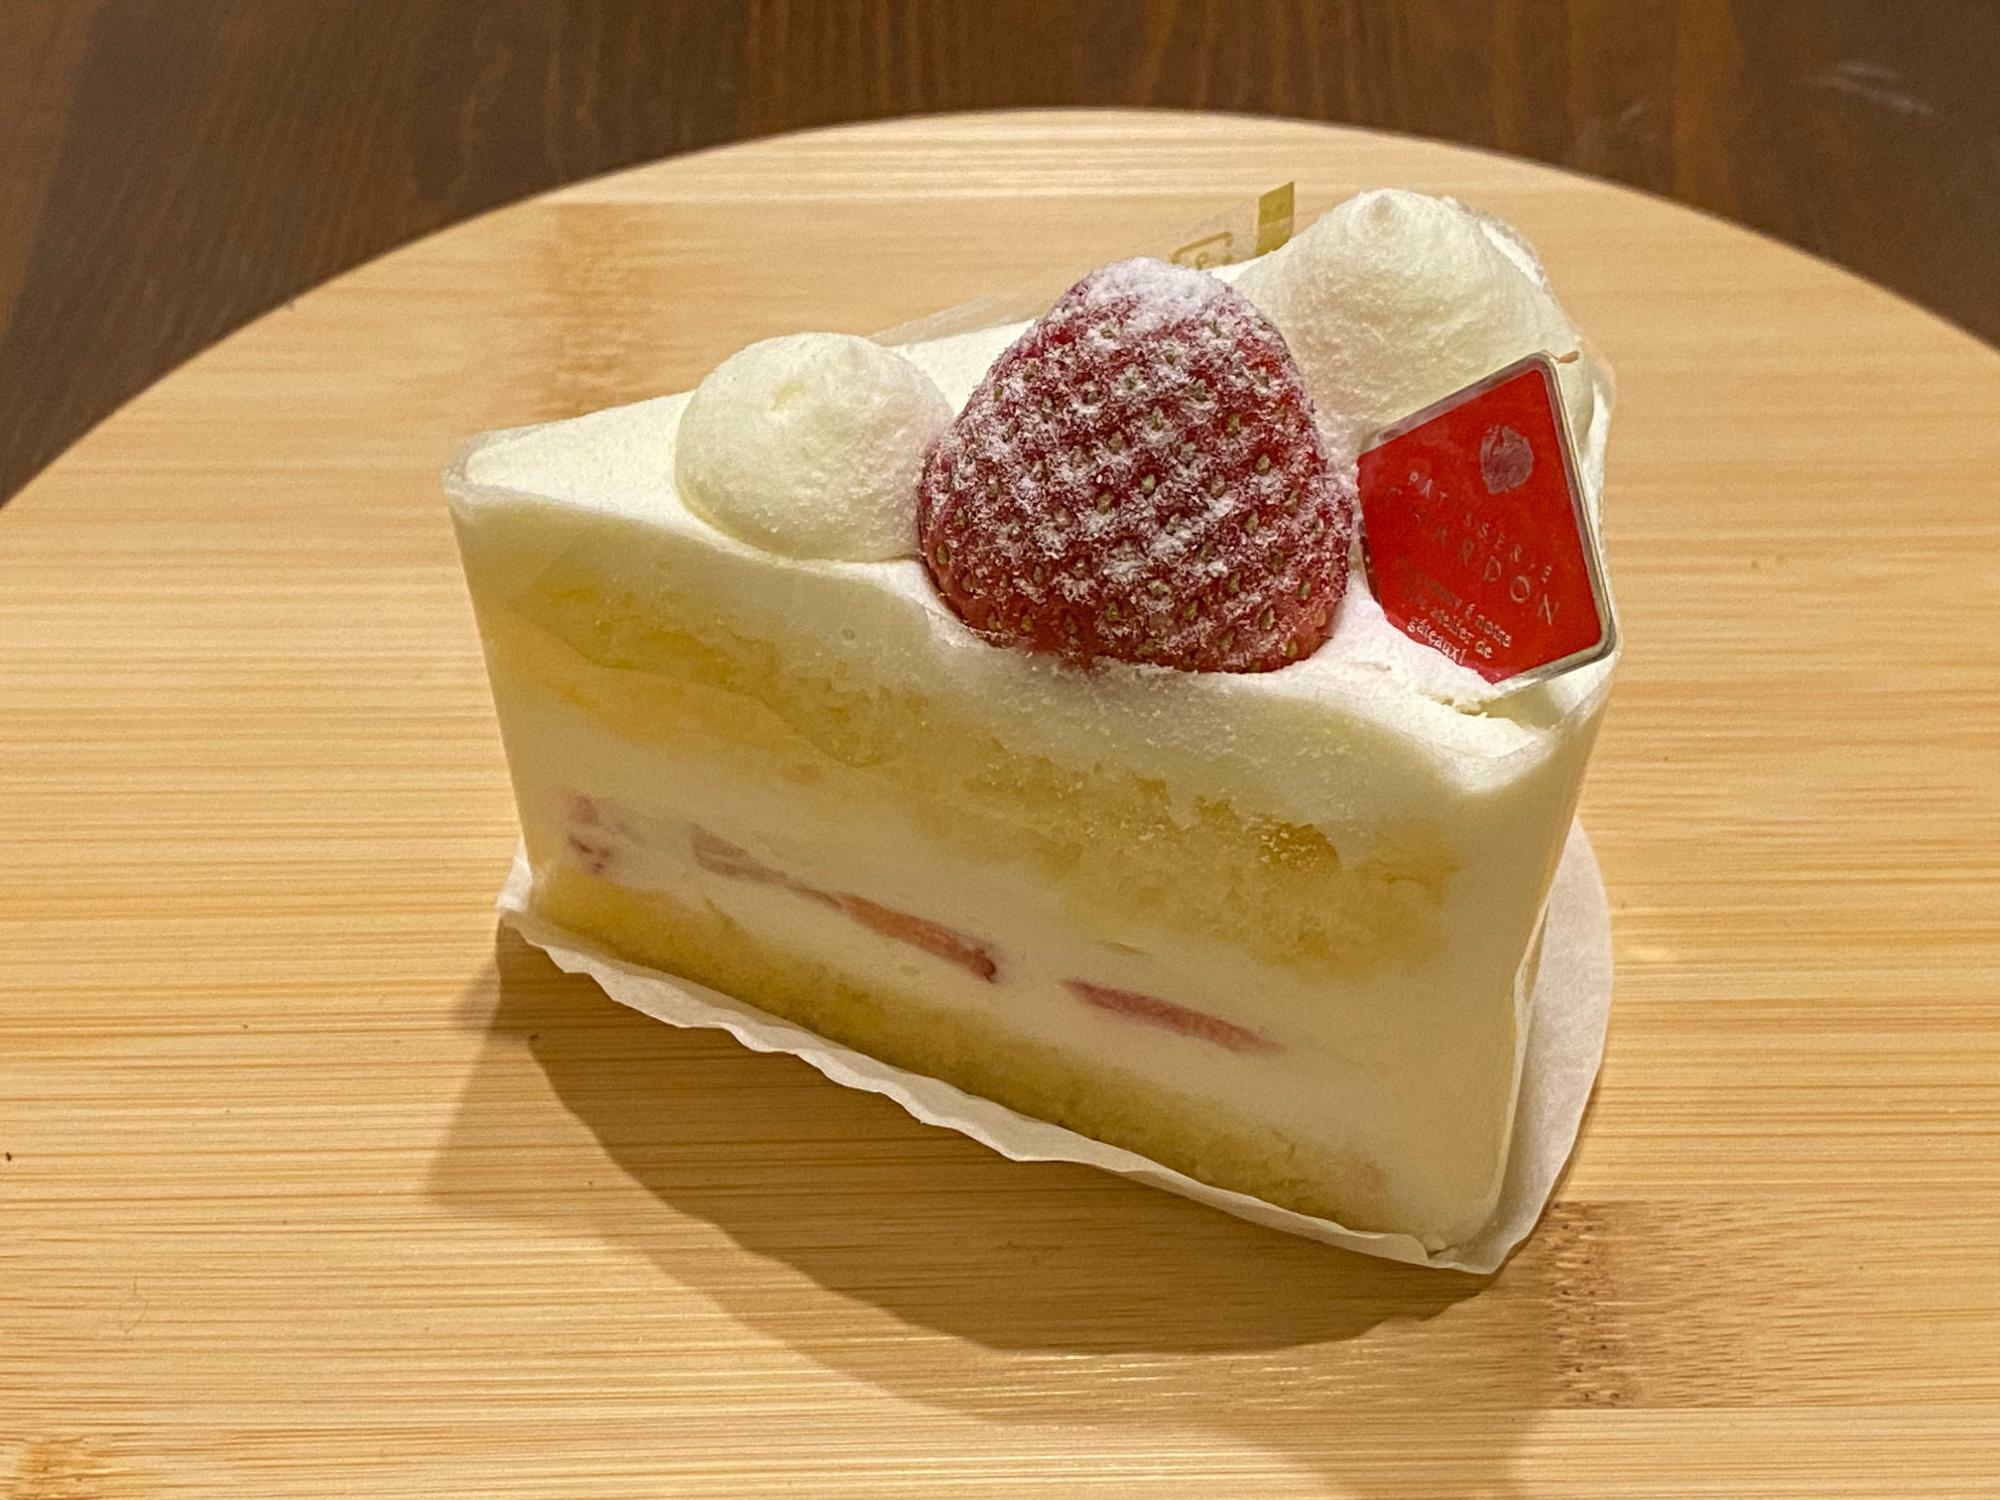 「ショートケーキ」税込470円